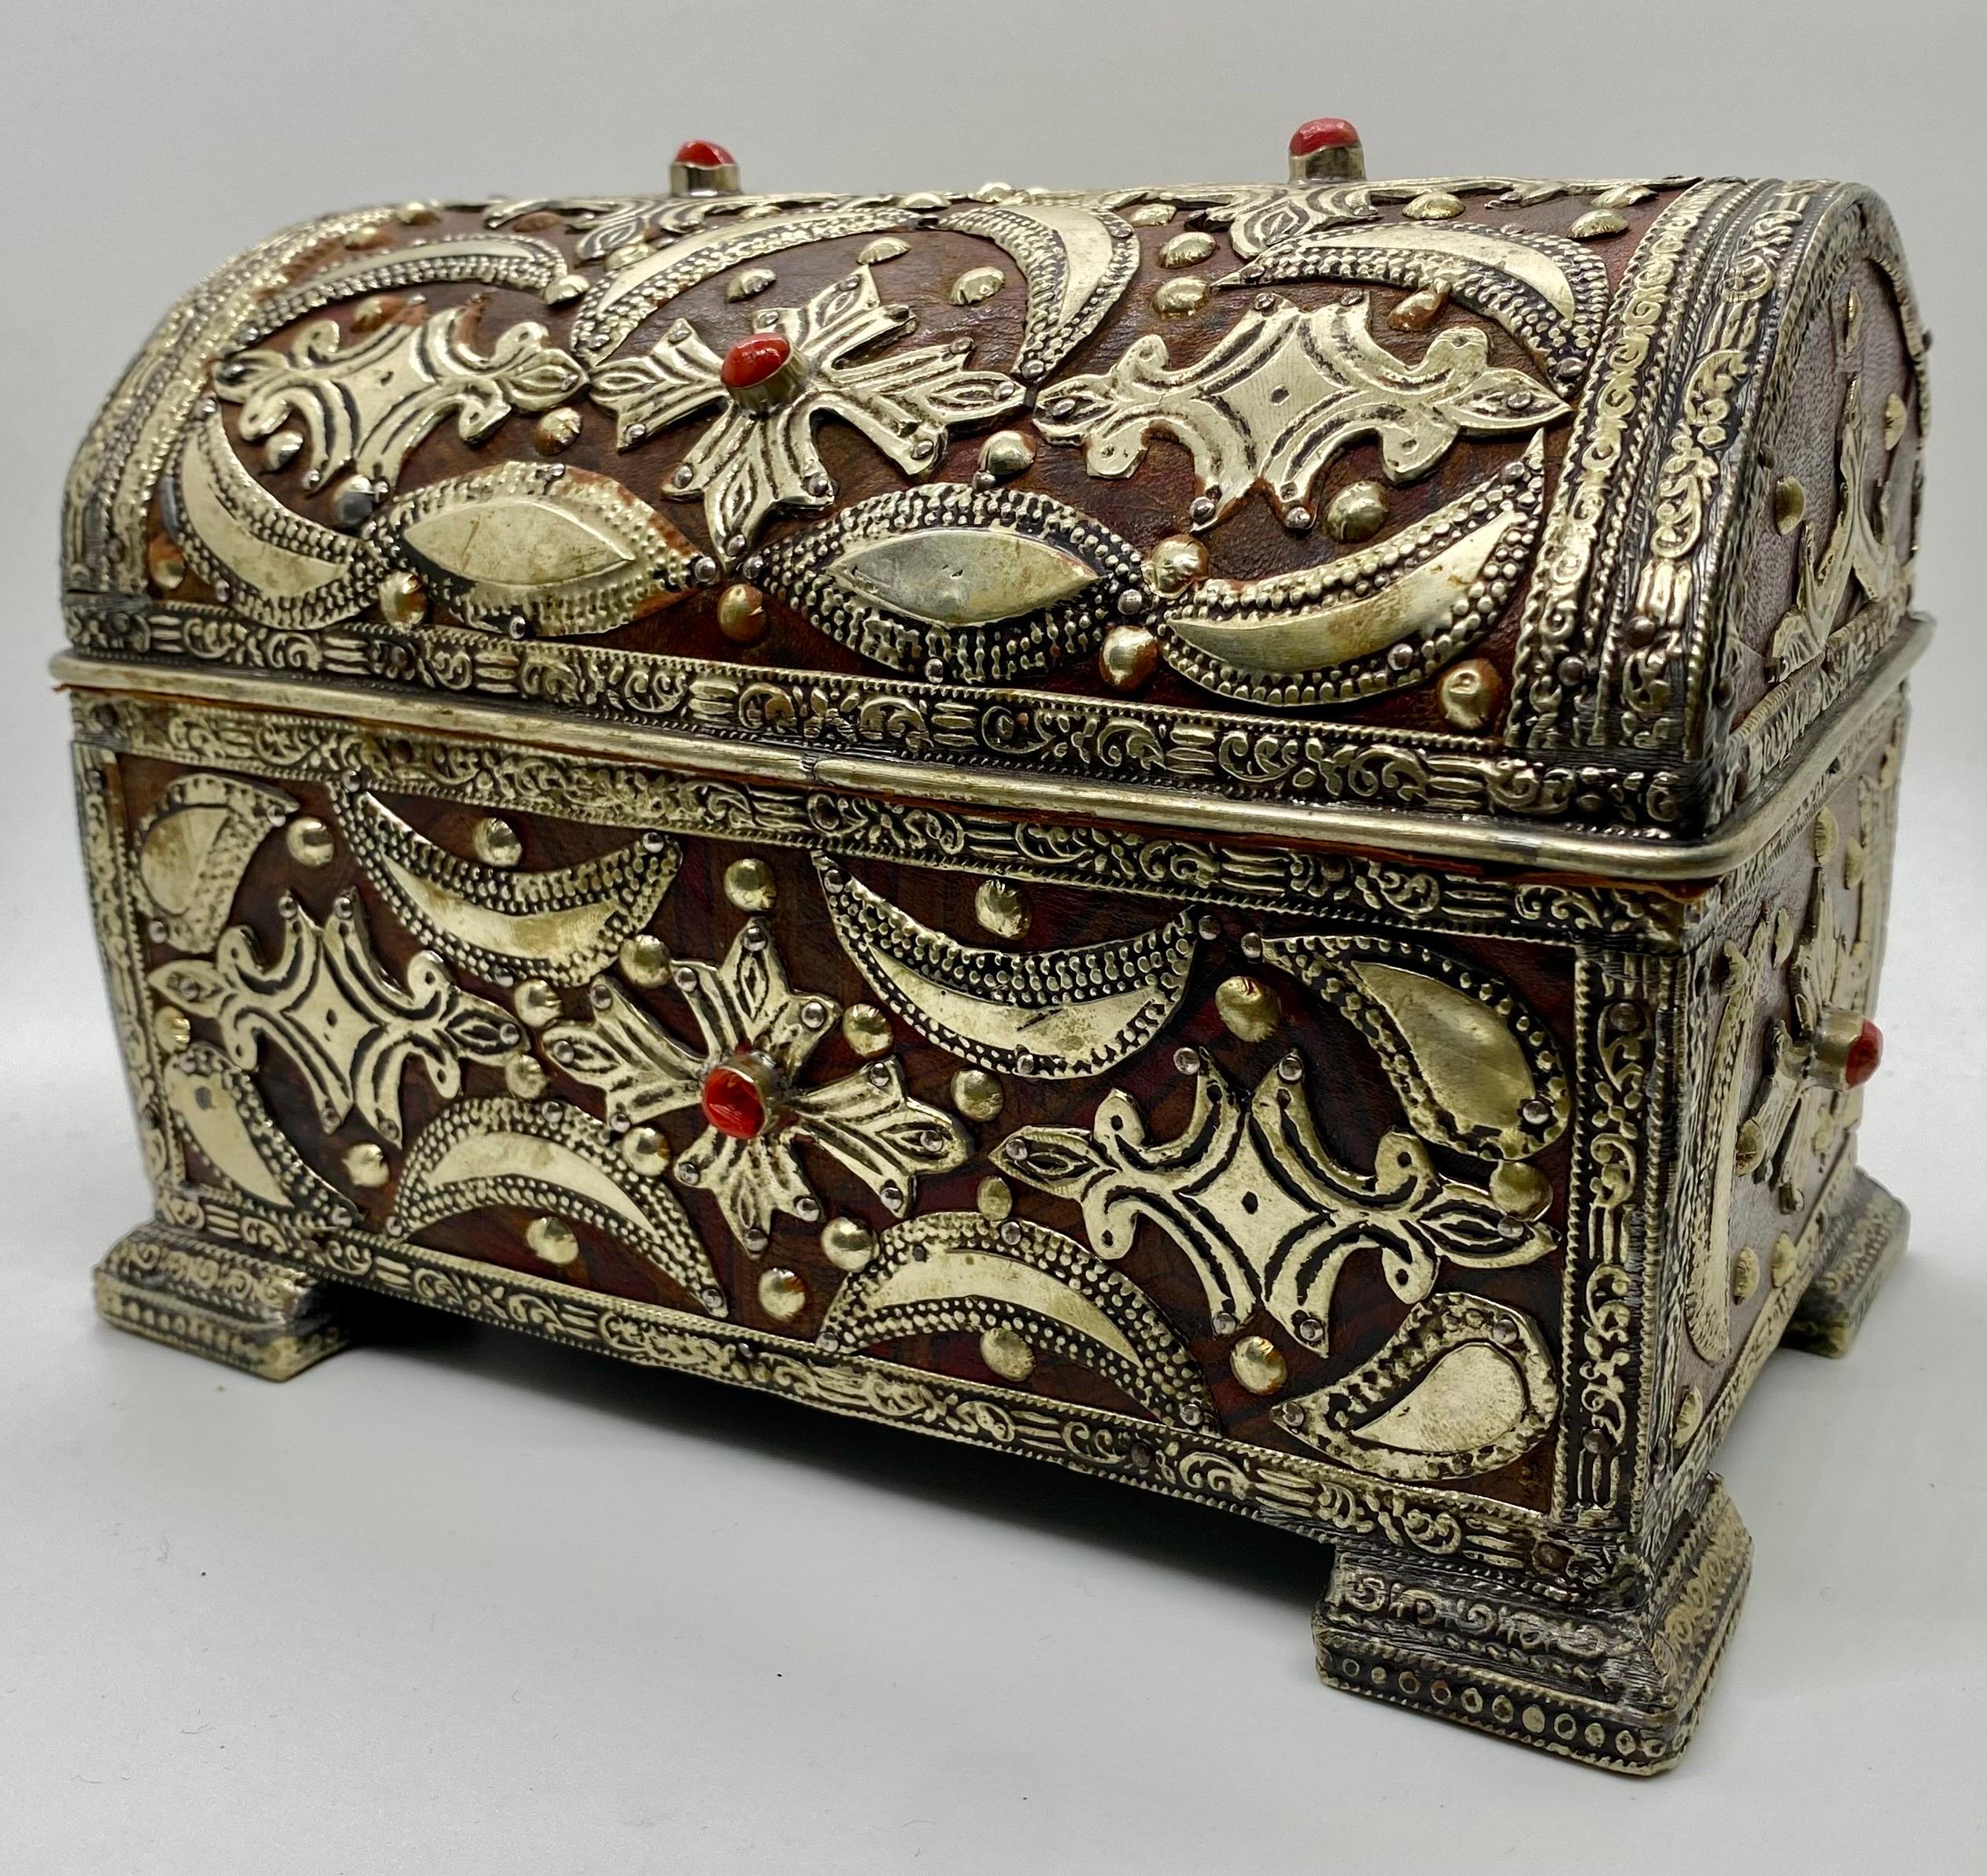 Une exquise boîte à bijoux ou un petit coffre de style gothique français, un témoignage de l'allure intemporelle de l'artisanat. Ornée d'incrustations complexes en laiton sur du cuir véritable, cette boîte dégage une aura de sophistication et